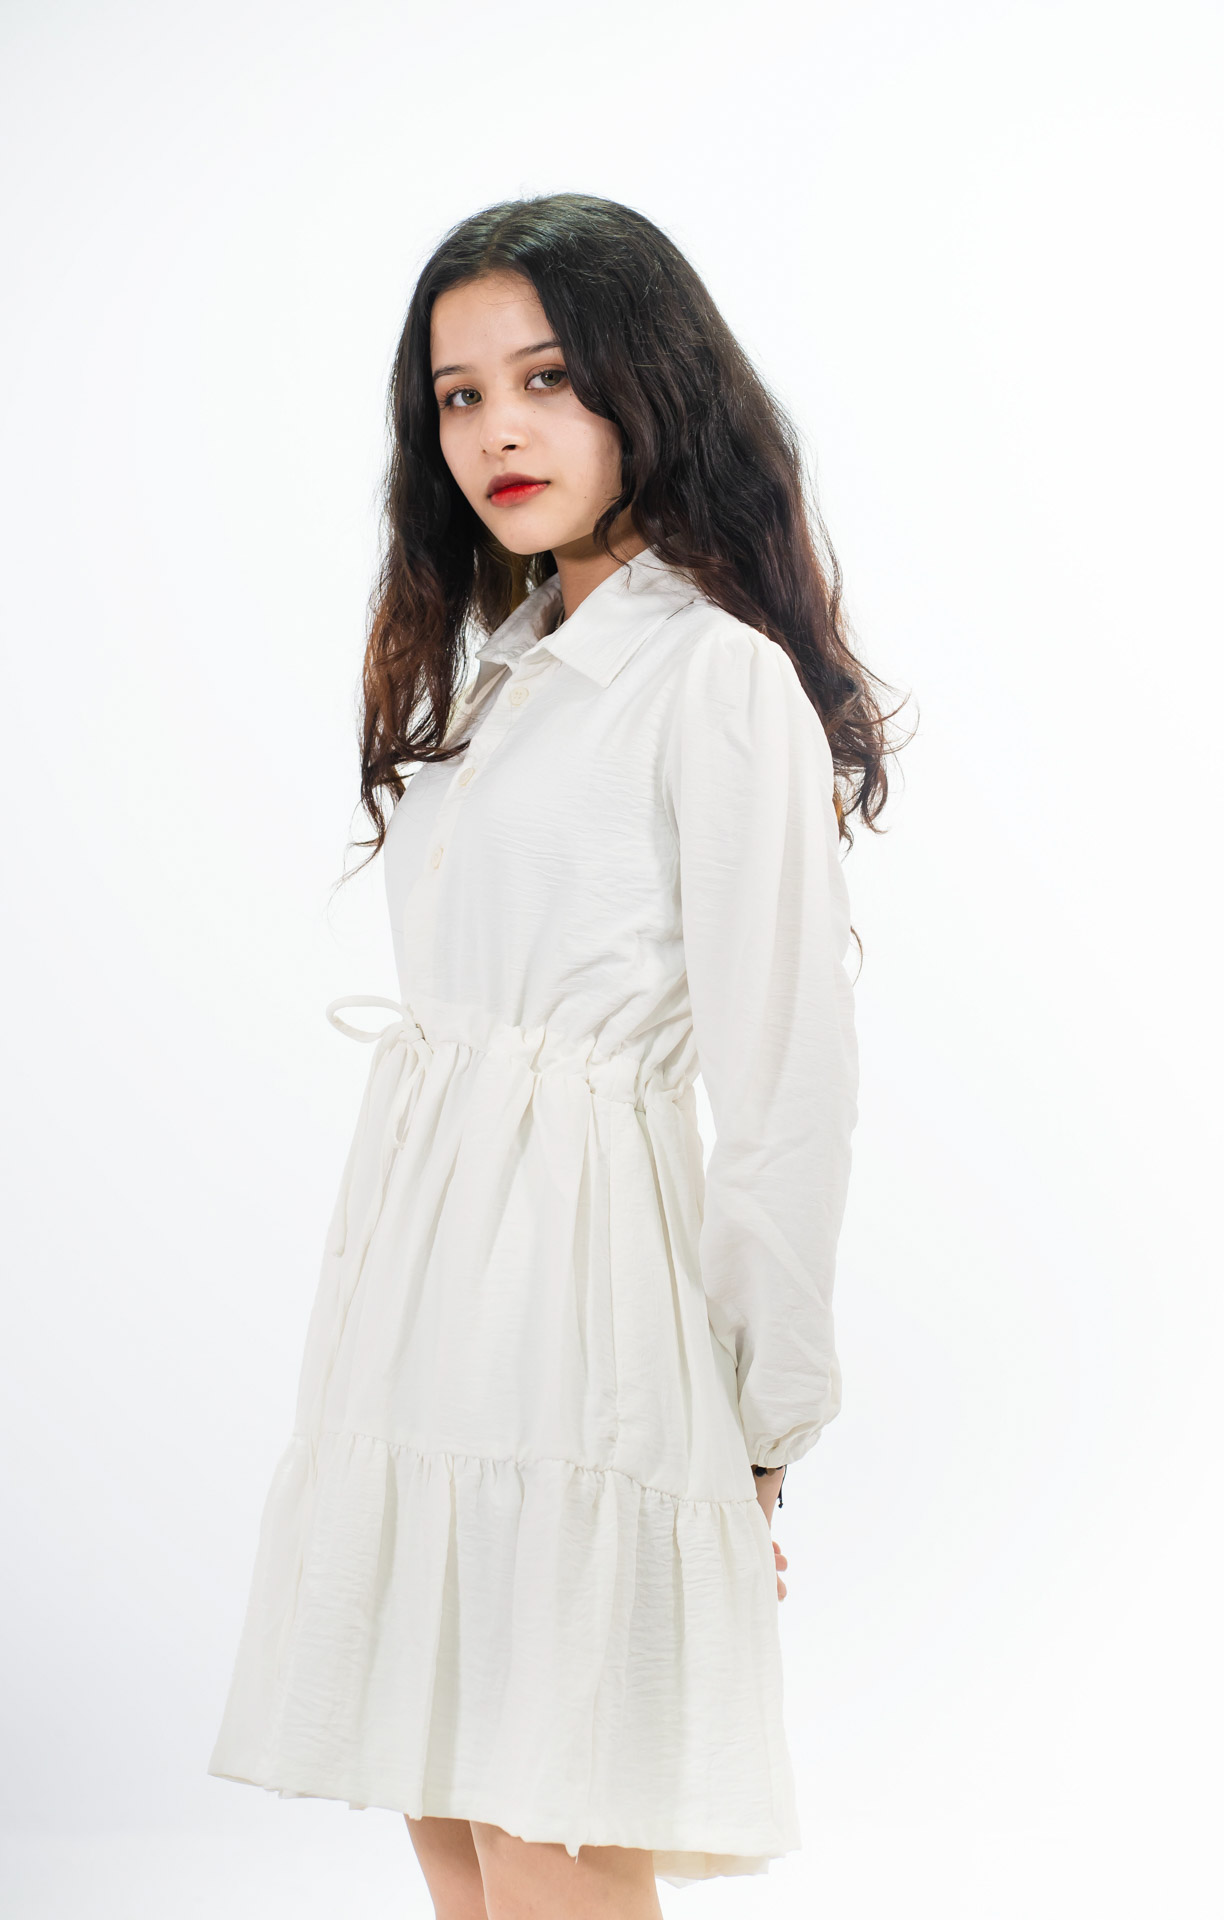 Reverie White Dress